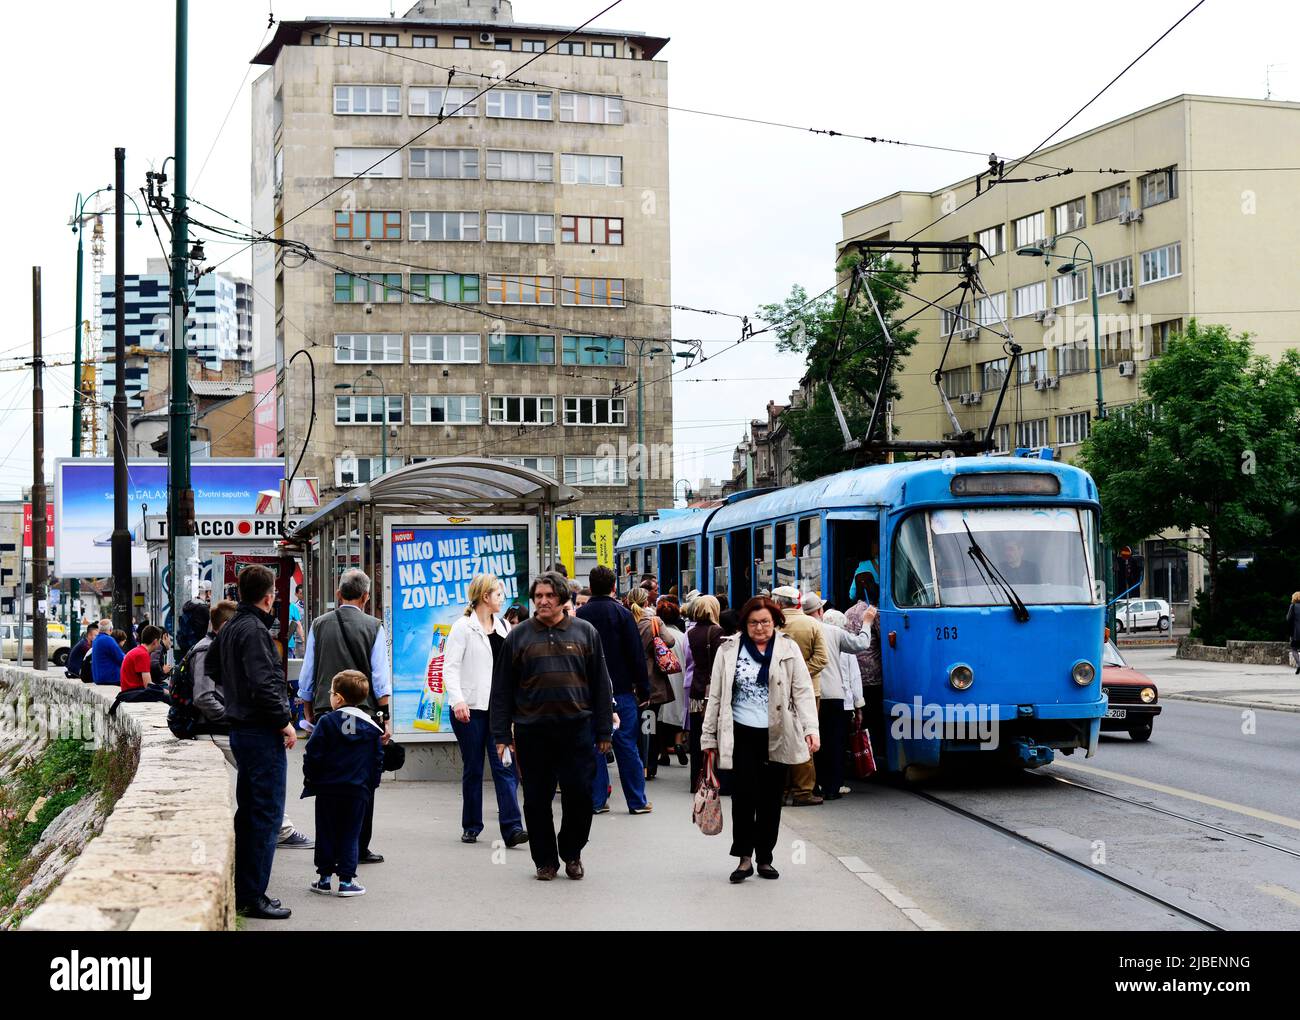 An old tram in central Sarajevo, Bosnia & Herzegovina. Stock Photo